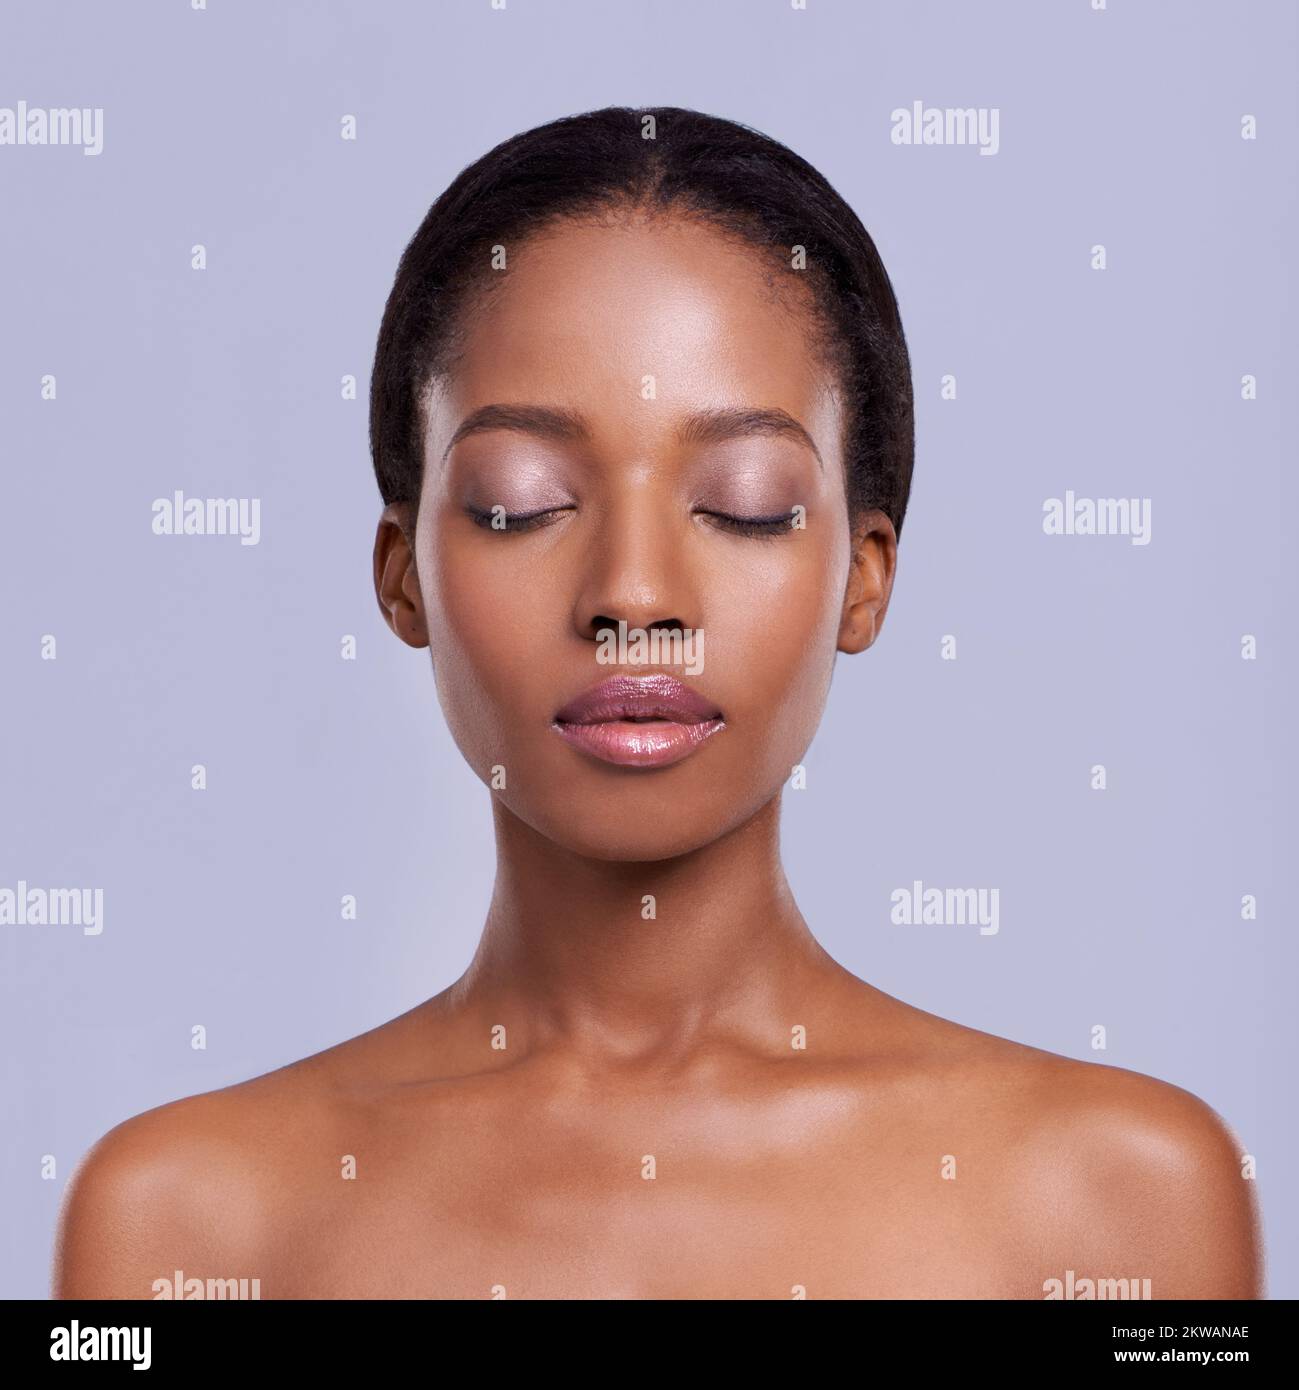 Perfekte Haut kann dir gehören. Kopf und Schultern Studio-Aufnahme eines wunderschönen afroamerikanischen Modells. Stockfoto